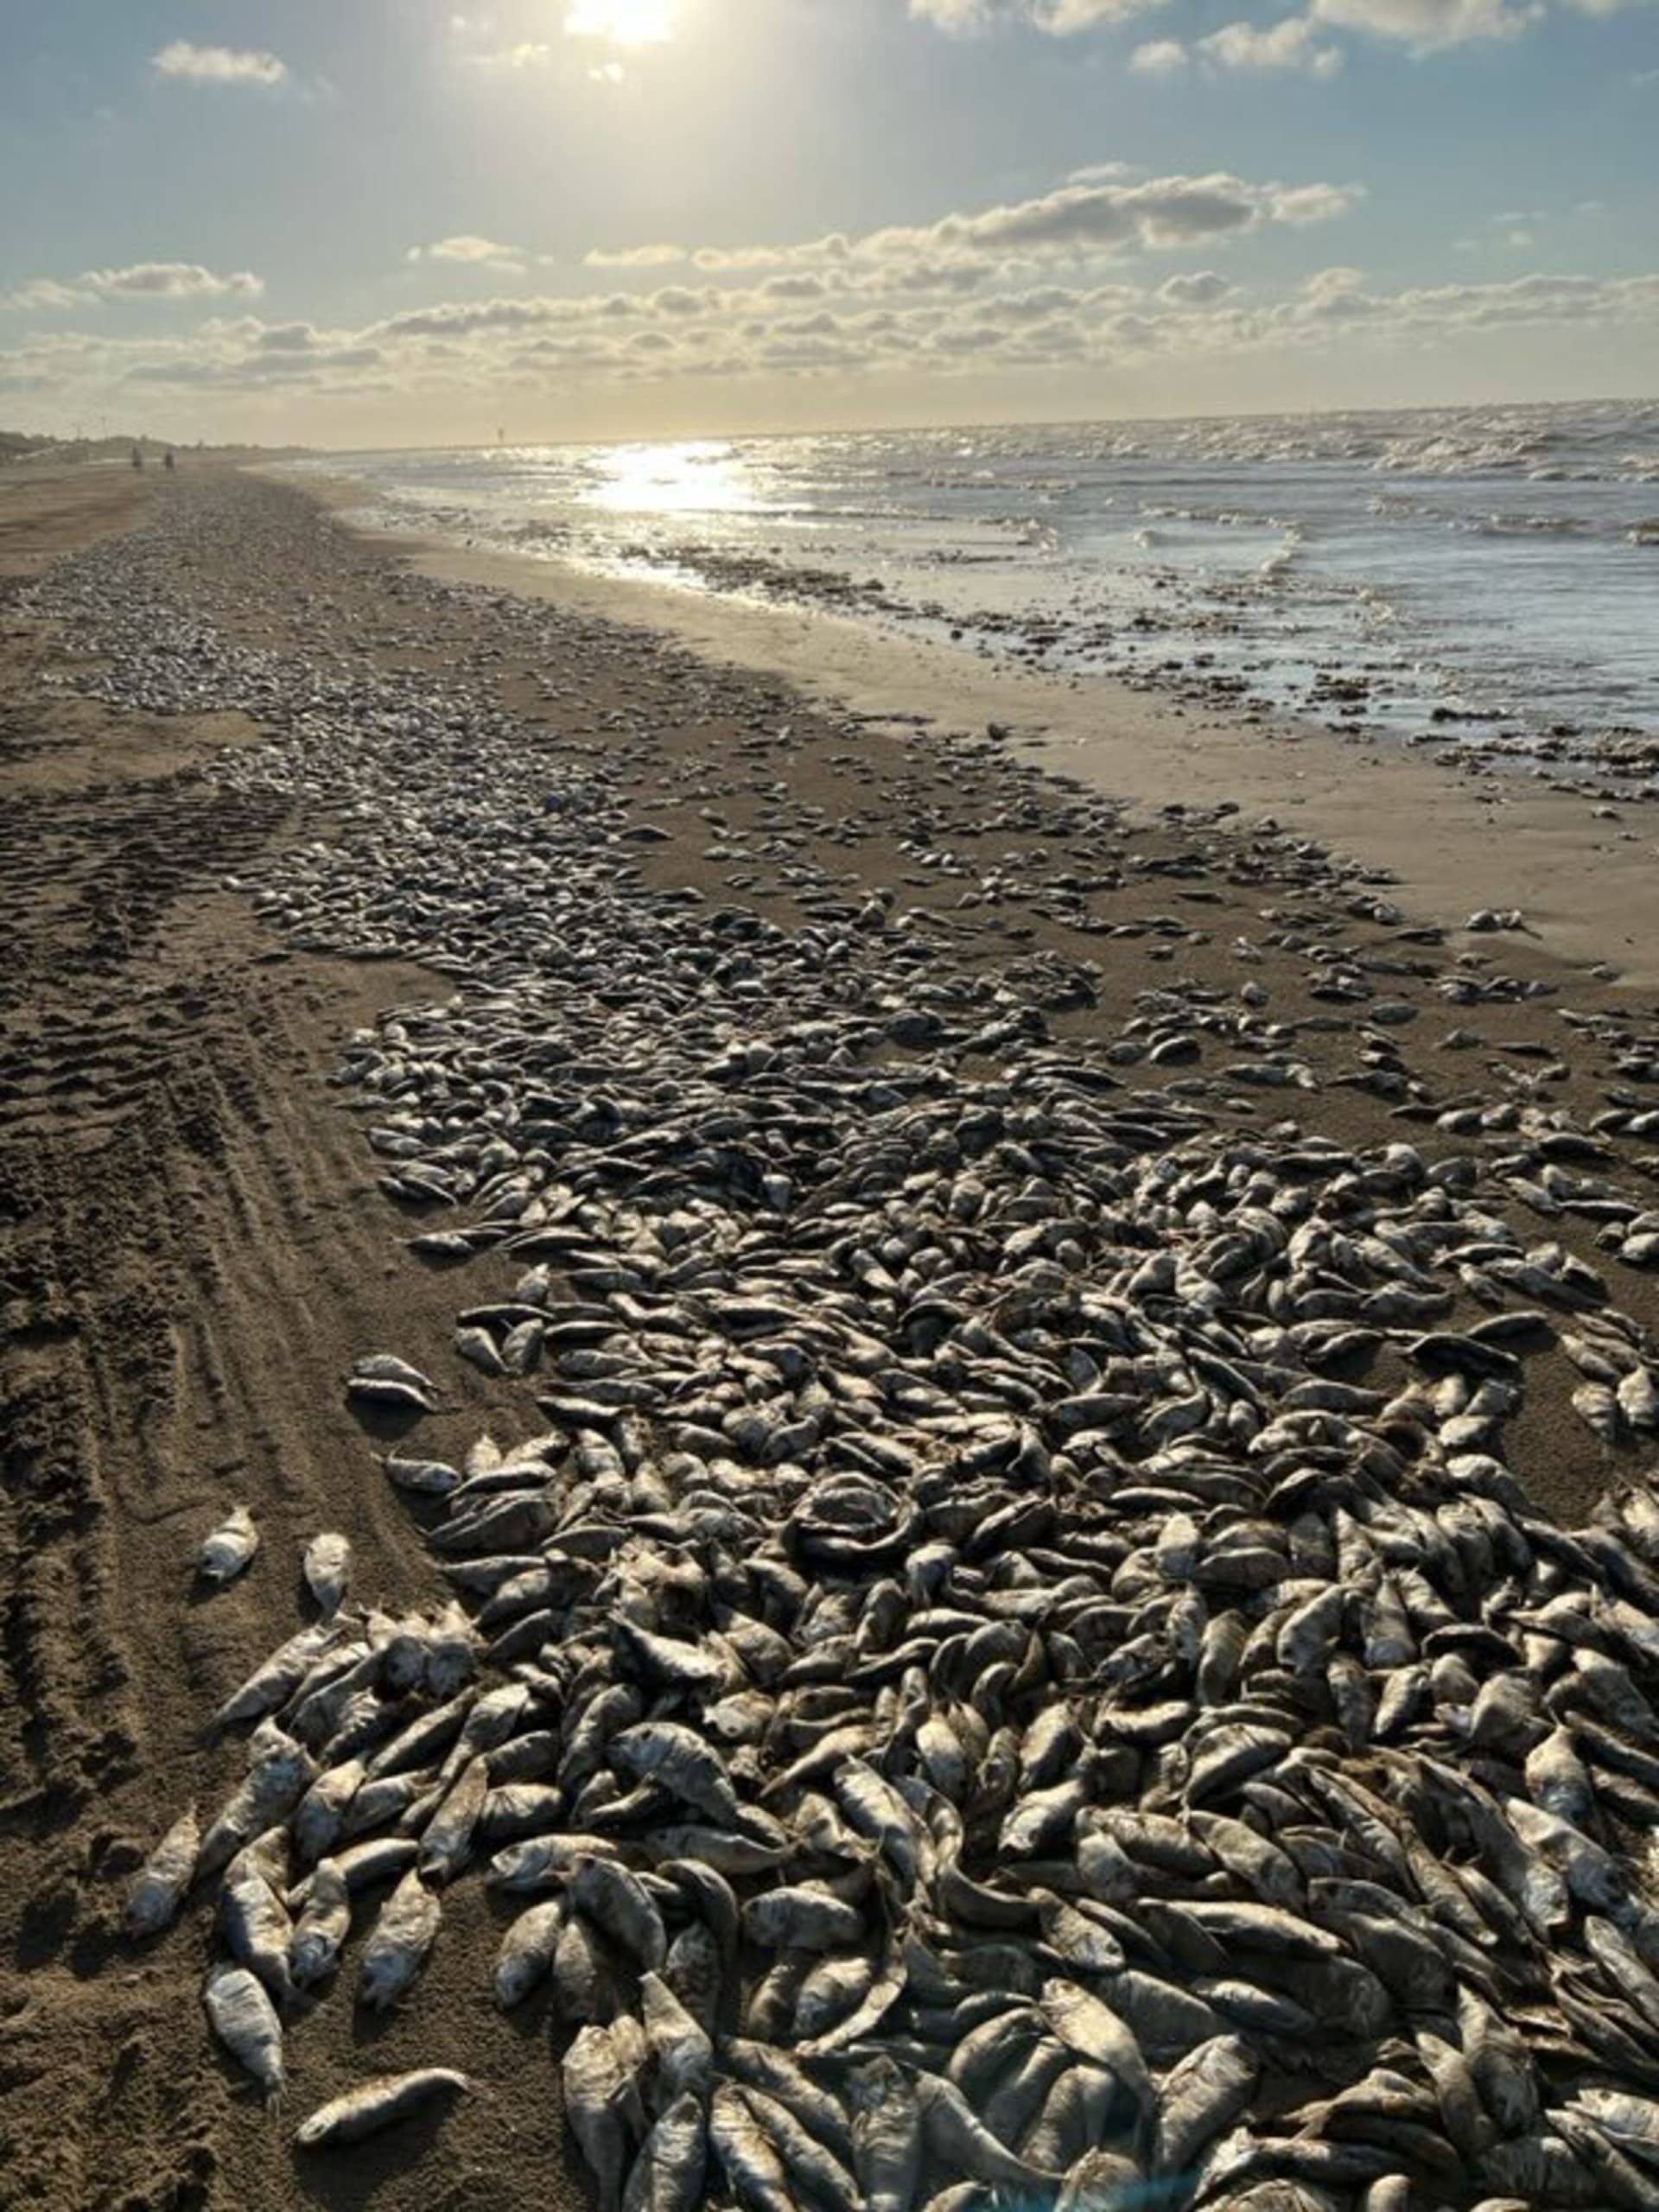 Statisíce mrtvých ryb na plážích